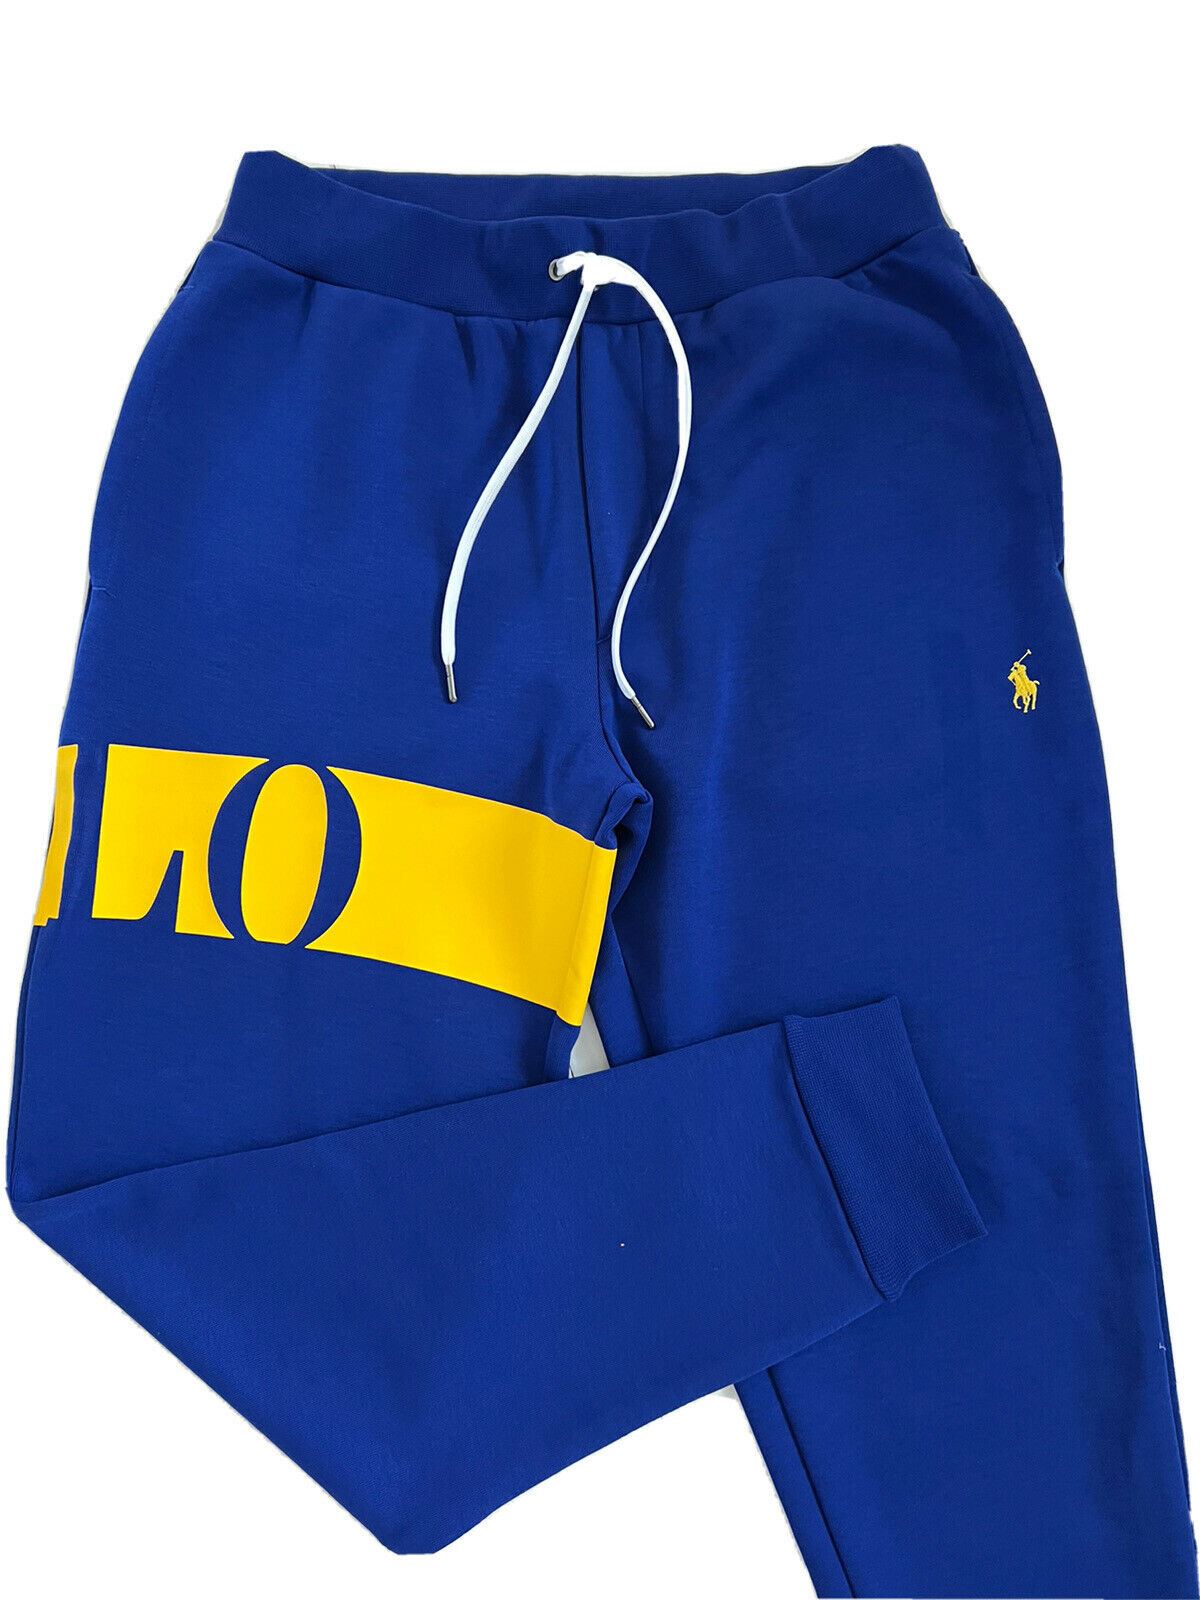 Neu mit Etikett: 125 $ Polo Ralph Lauren Herren-Freizeithose mit großem Polo-Logo in Blau, Größe S